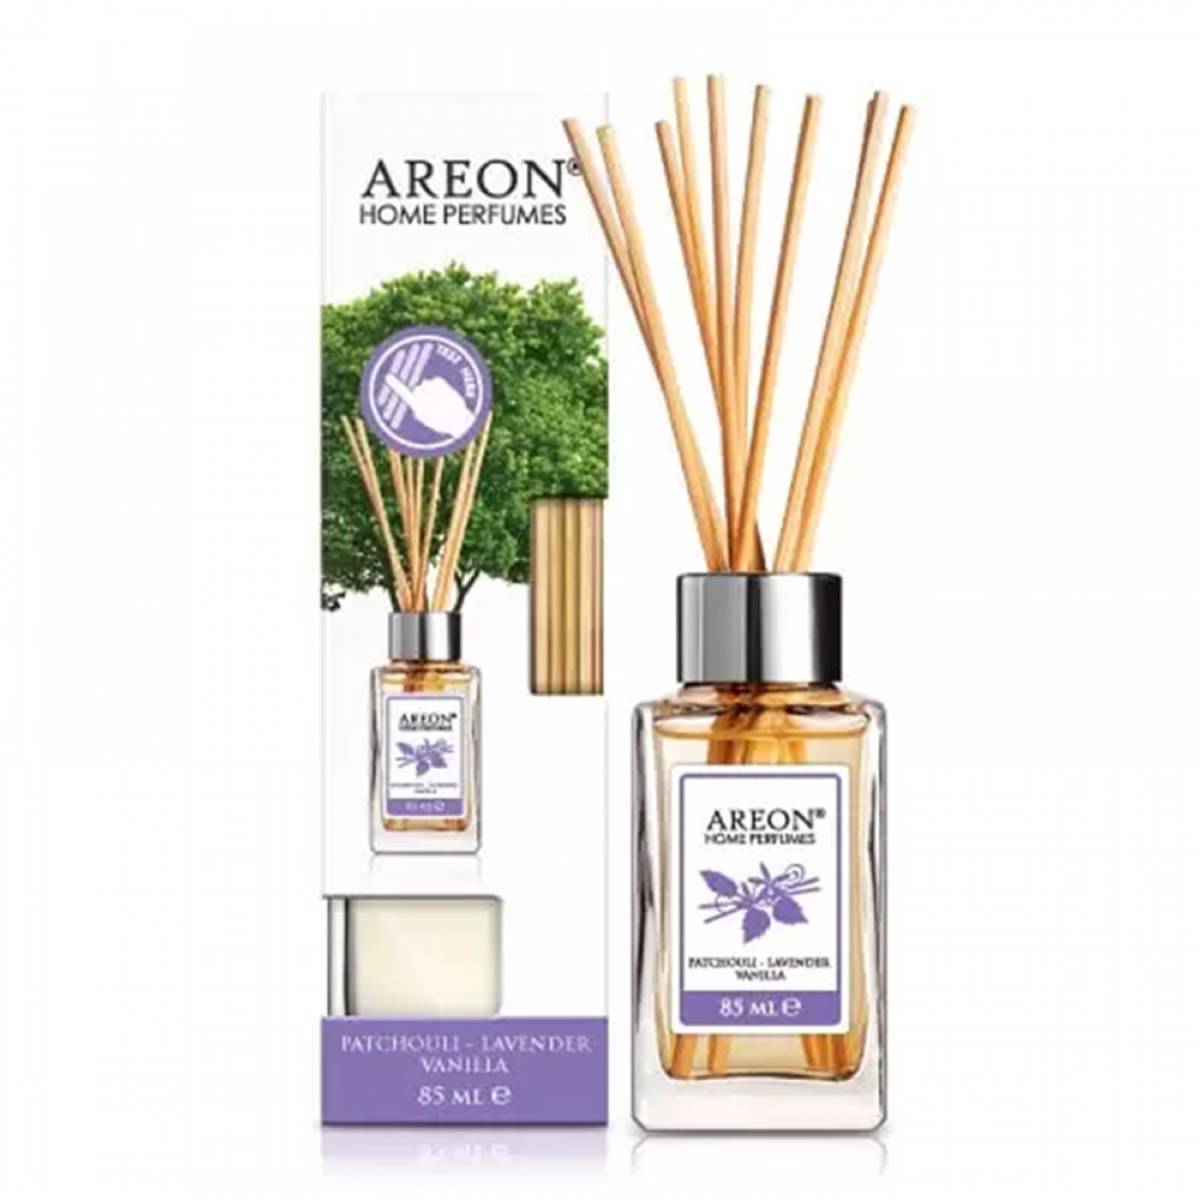 Аромадифузор Areon Home Perfume Patchouli Lavender Vanilla 85мл 3800034960465 Areon